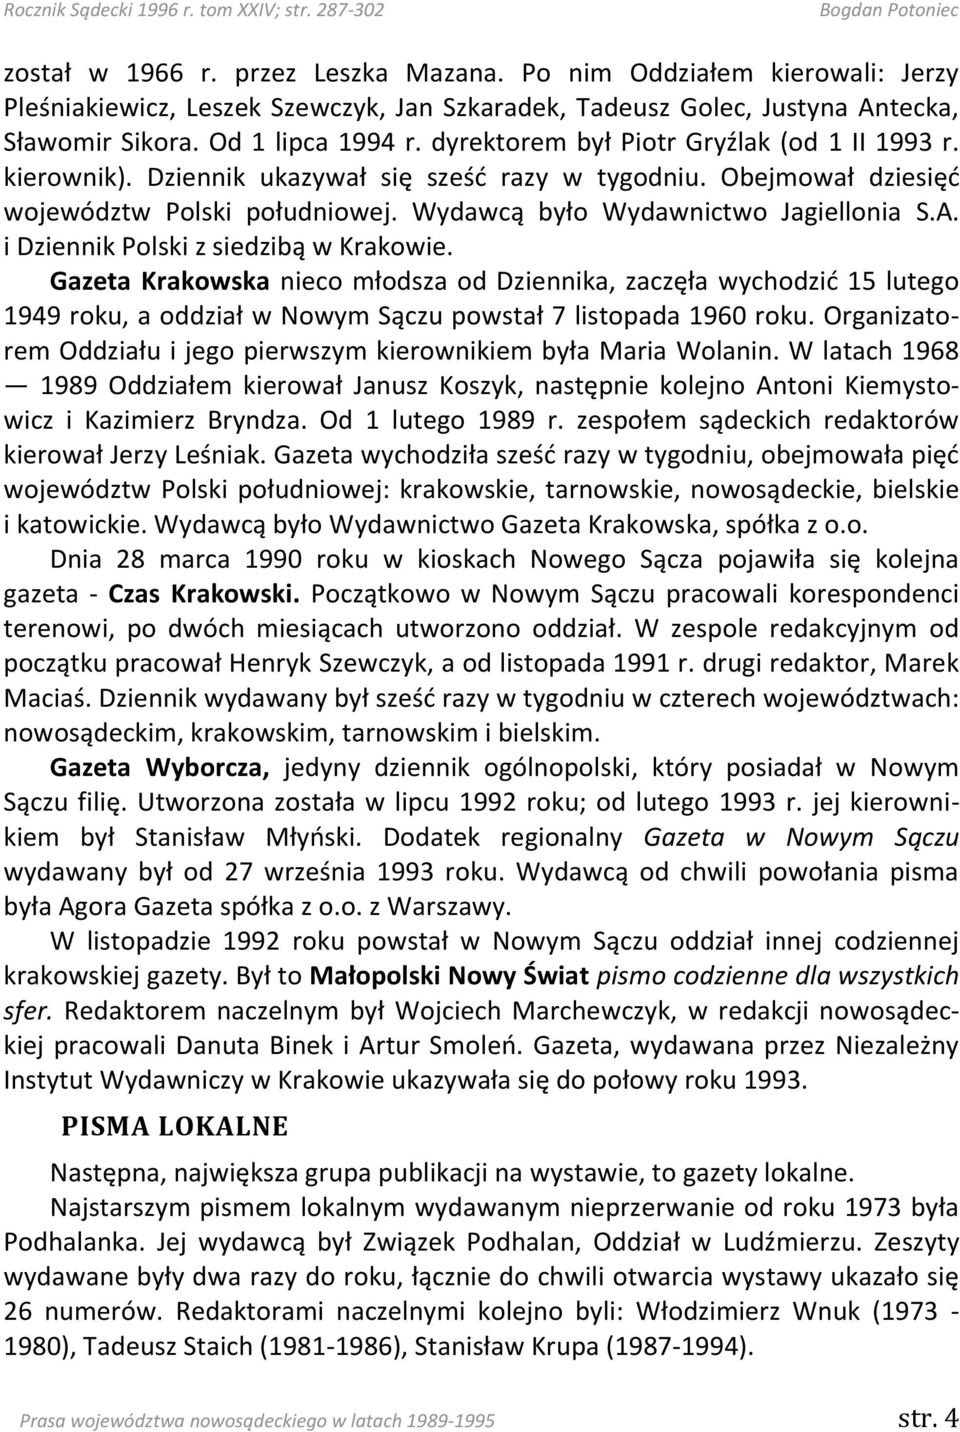 i Dziennik Polski z siedzibą w Krakowie. Gazeta Krakowska nieco młodsza od Dziennika, zaczęła wychodzid 15 lutego 1949 roku, a oddział w Nowym Sączu powstał 7 listopada 1960 roku.